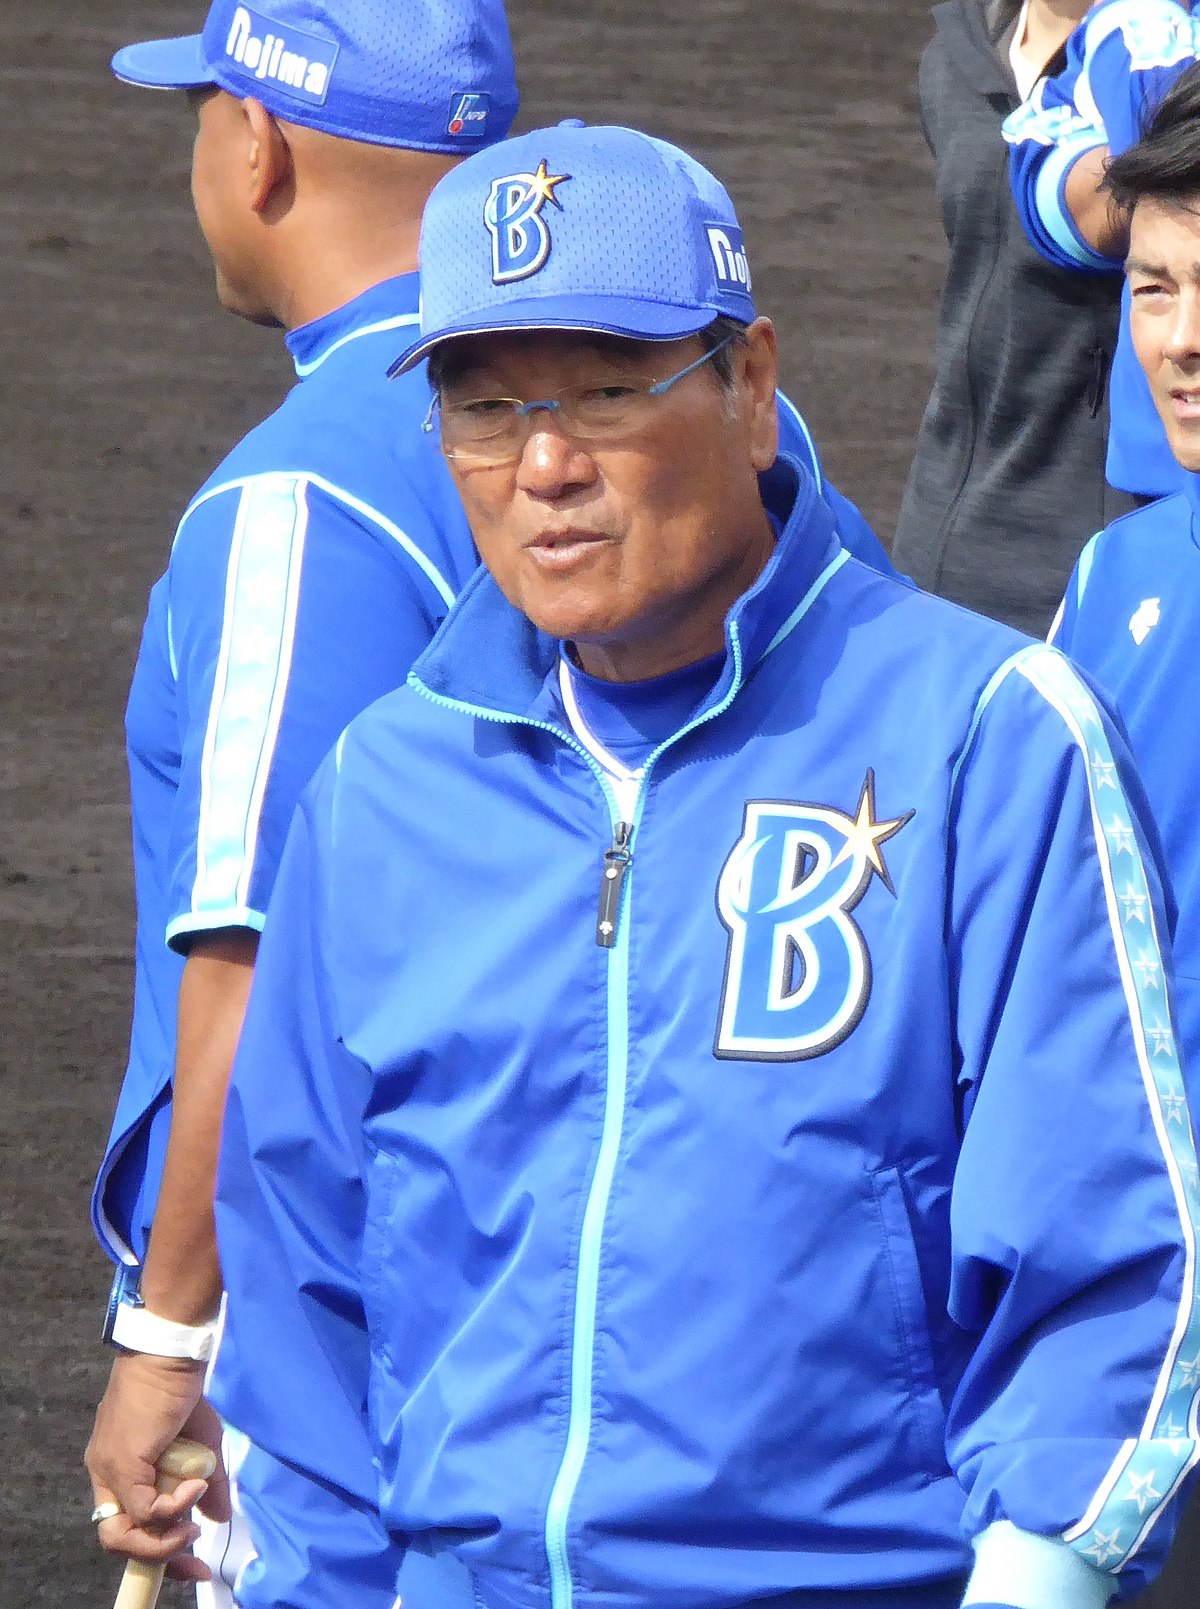 田代富雄 - Wikipedia